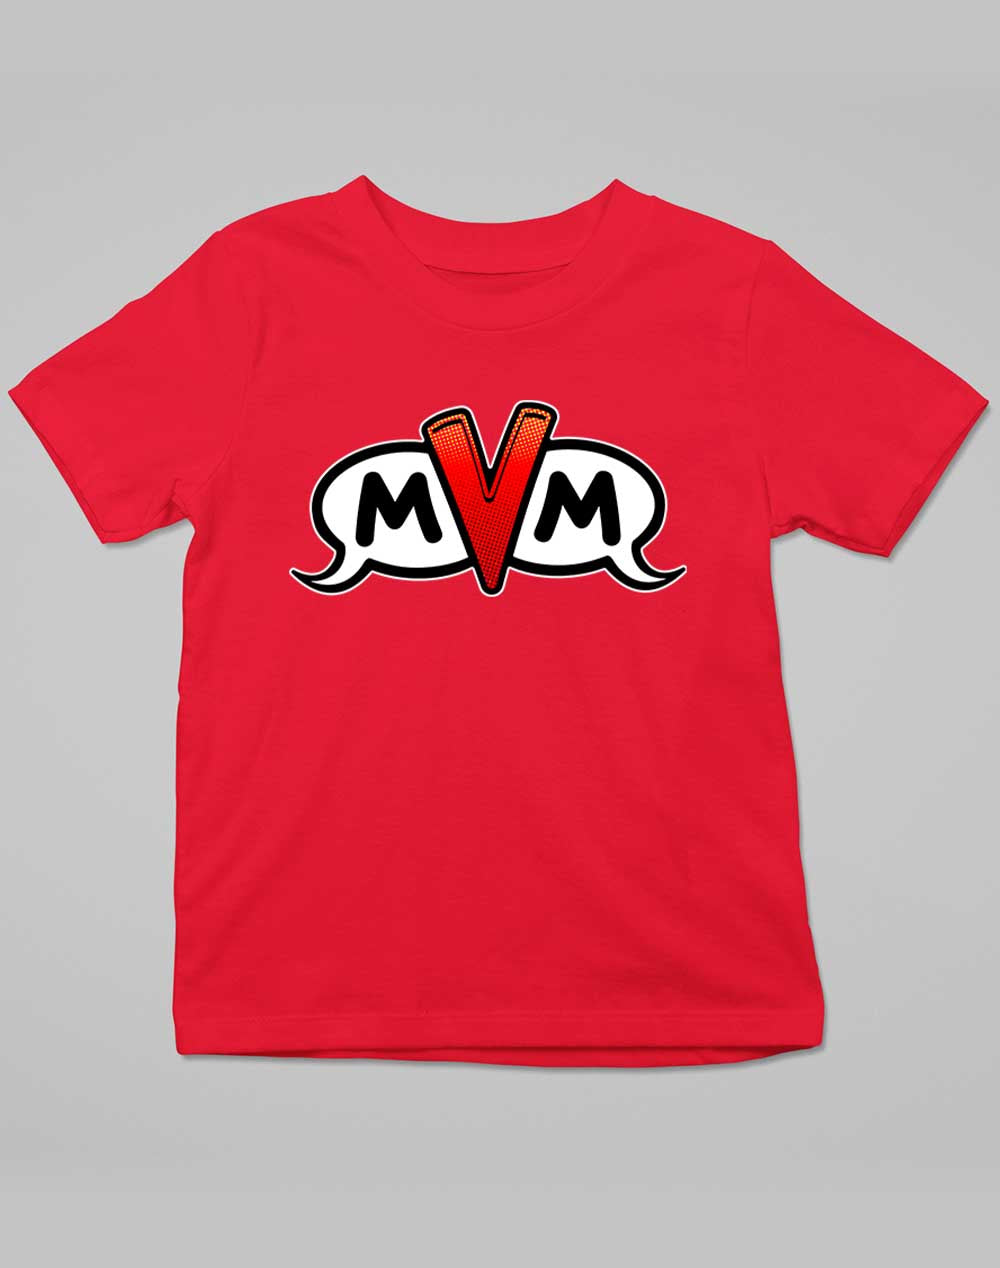 Red - MvM Logo Kids T-Shirt